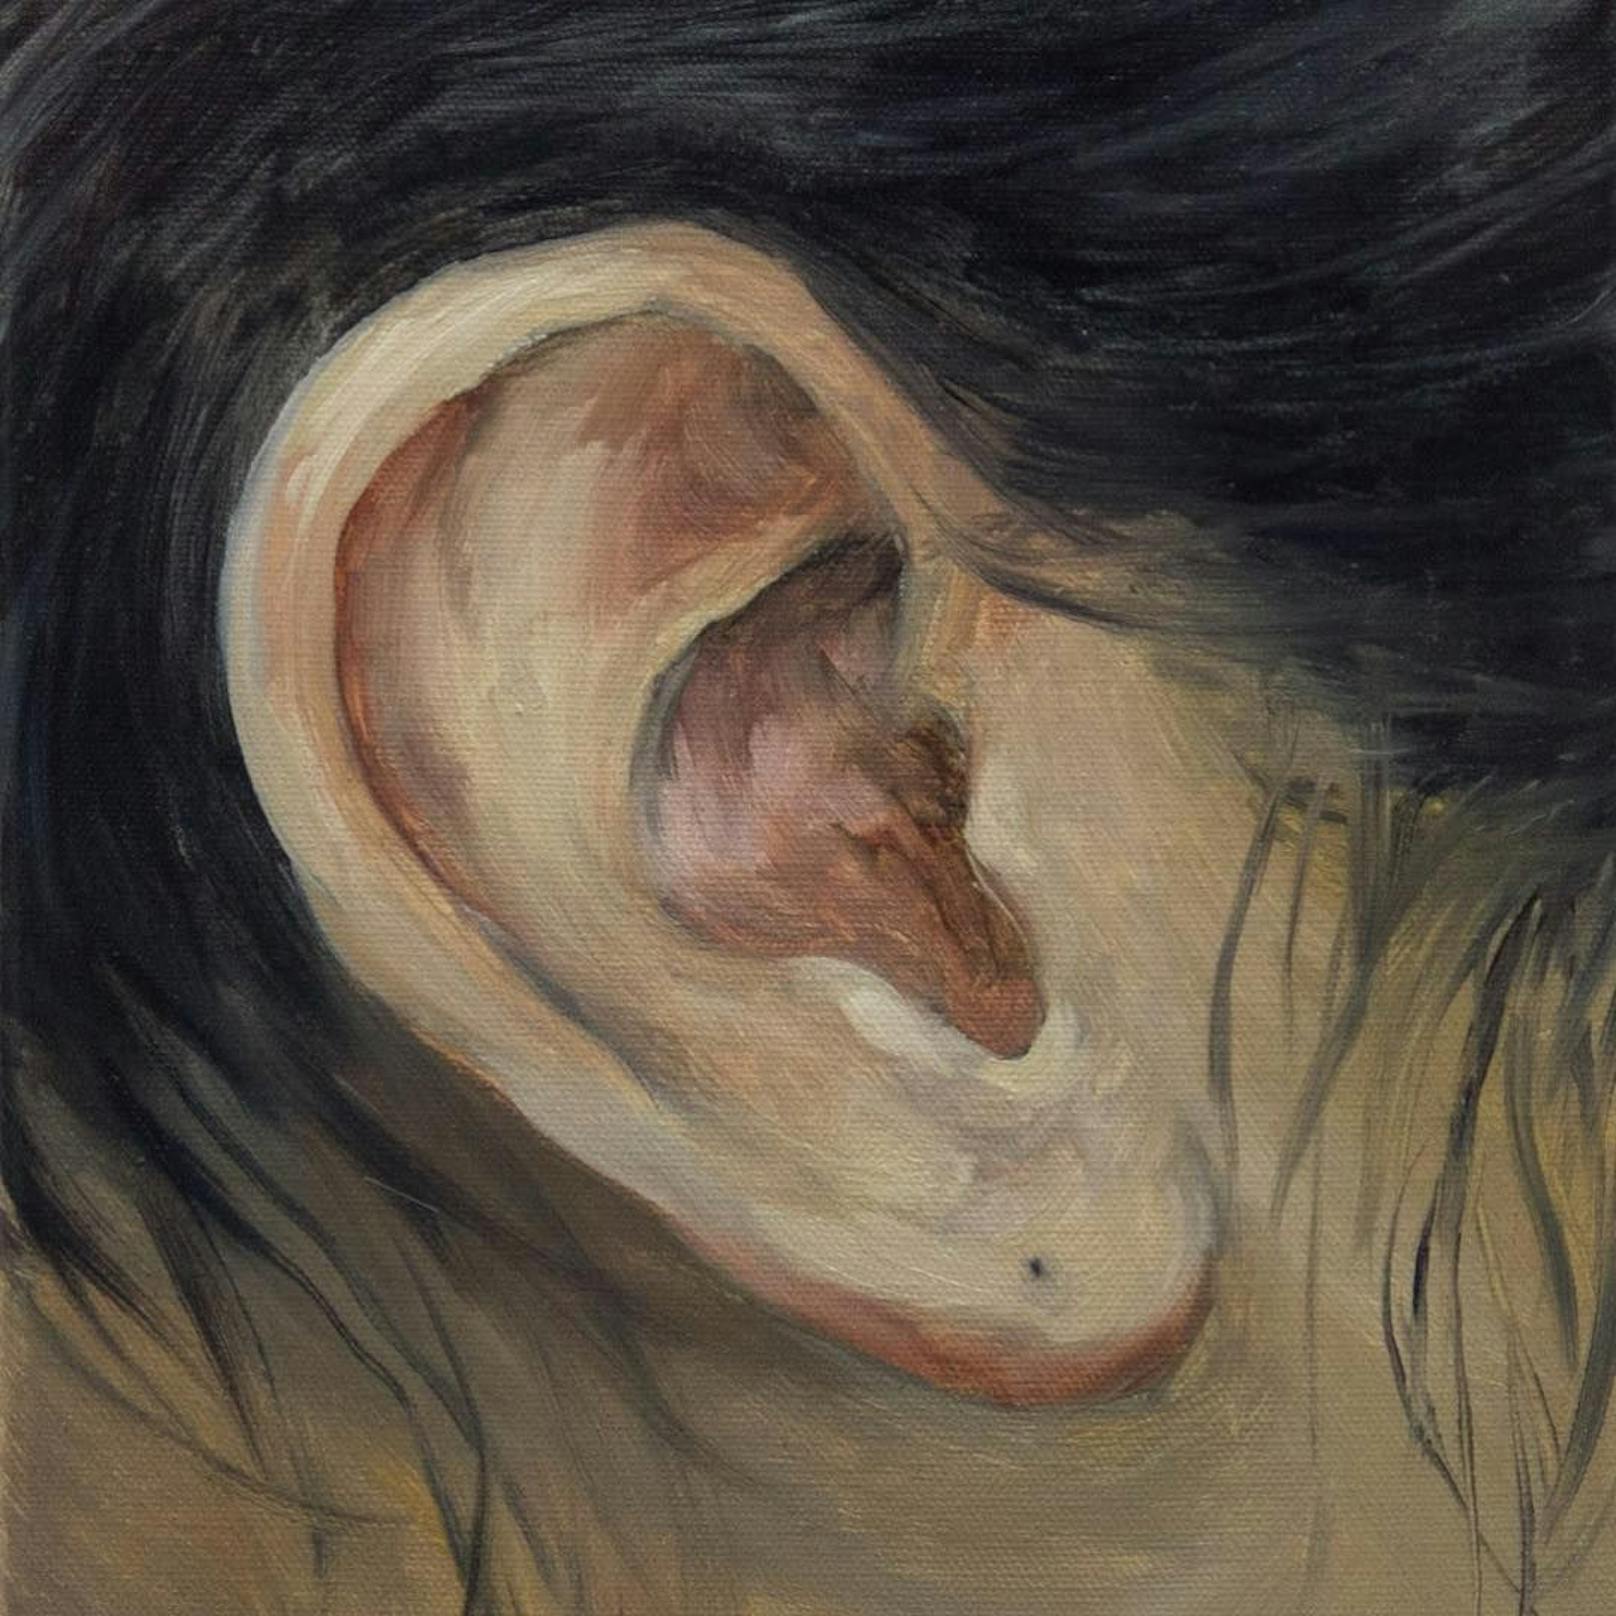 Aus der "Ear Collection" (Ohrenkollektion); 24 x 30 cm, Öl auf Canvas